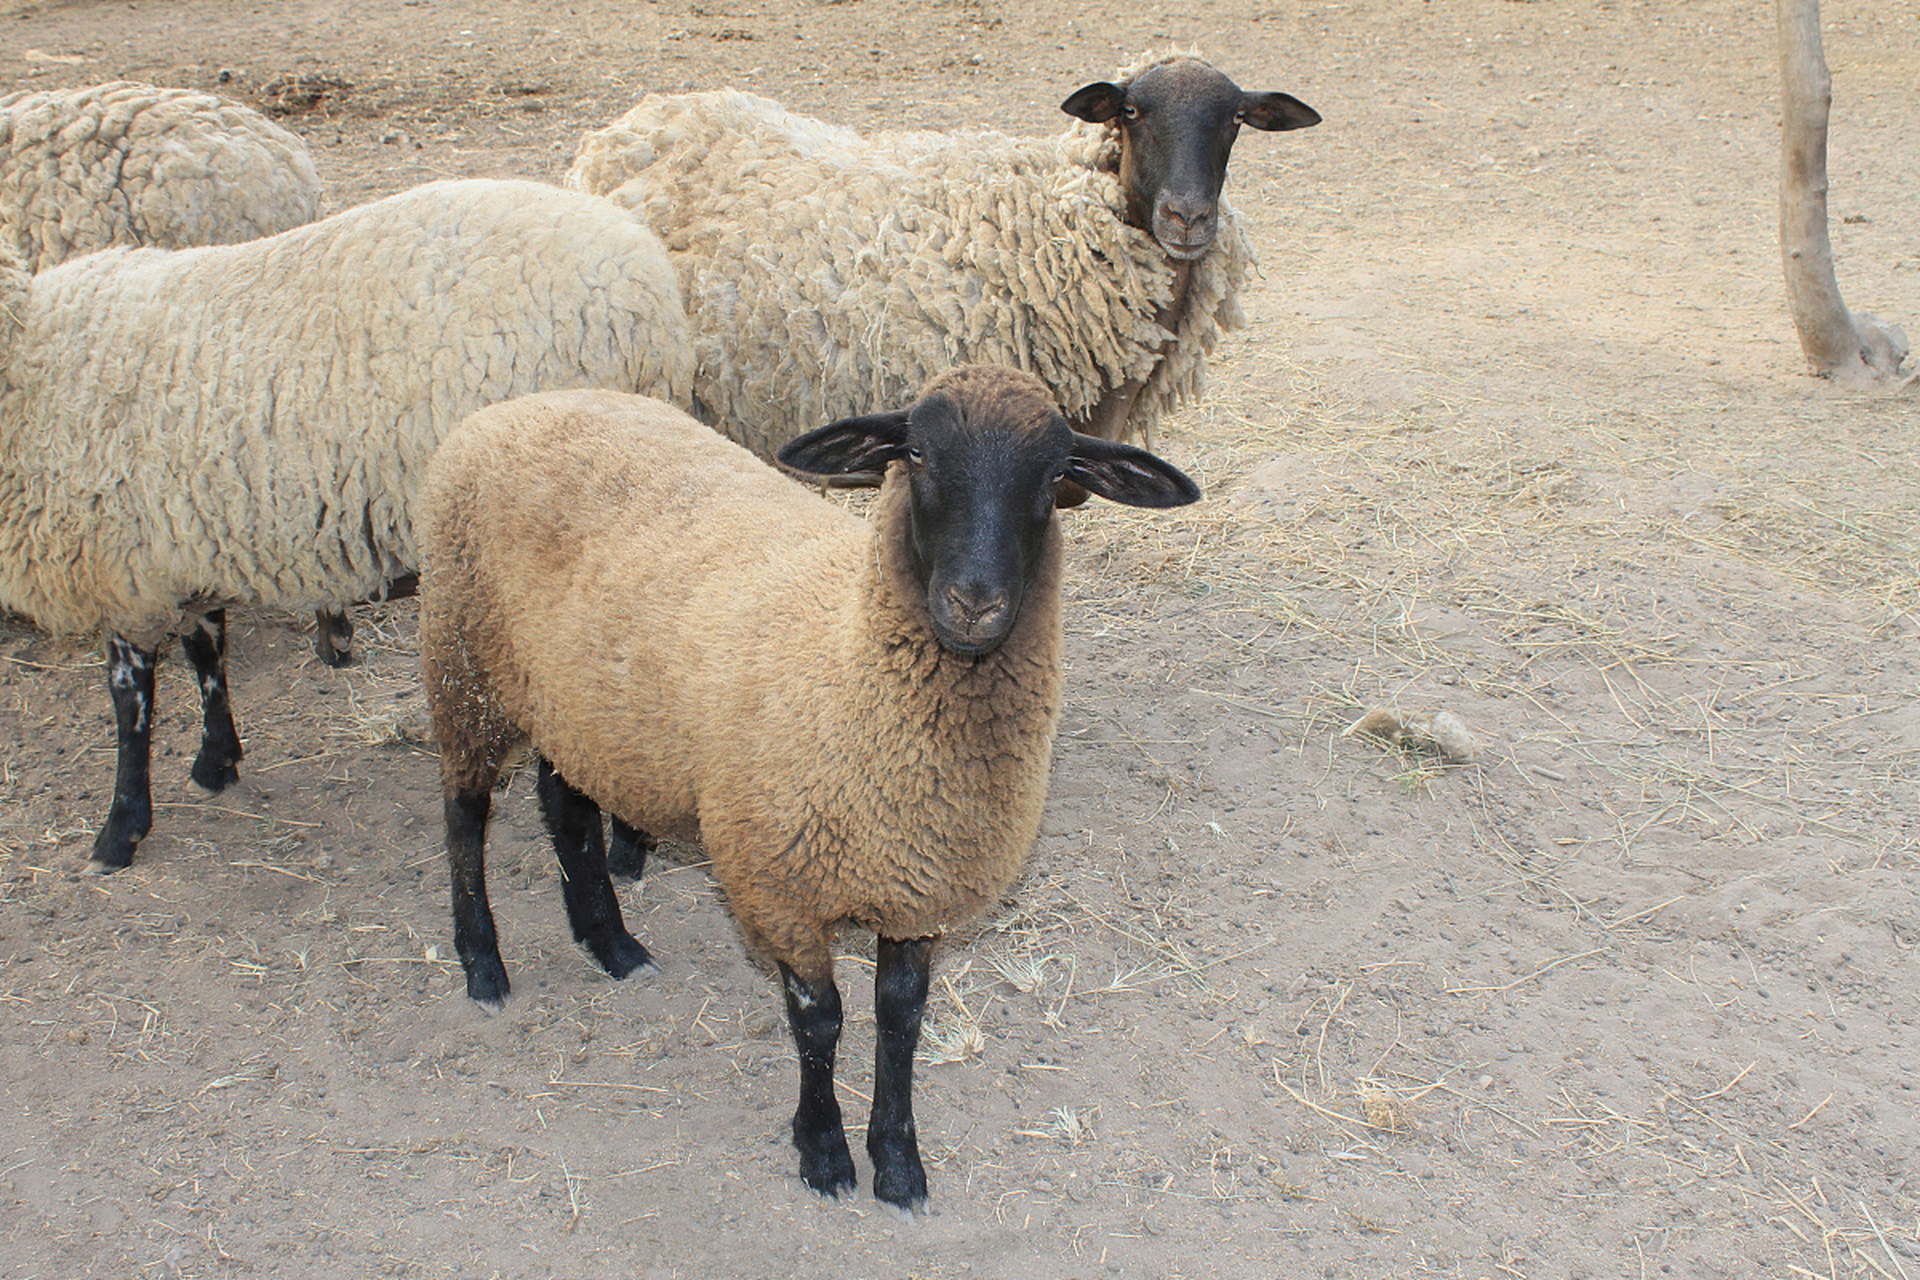 纯种杜泊羊的尾巴细长,浓密柔软,具有保暖和保持平衡的实用功能,同时